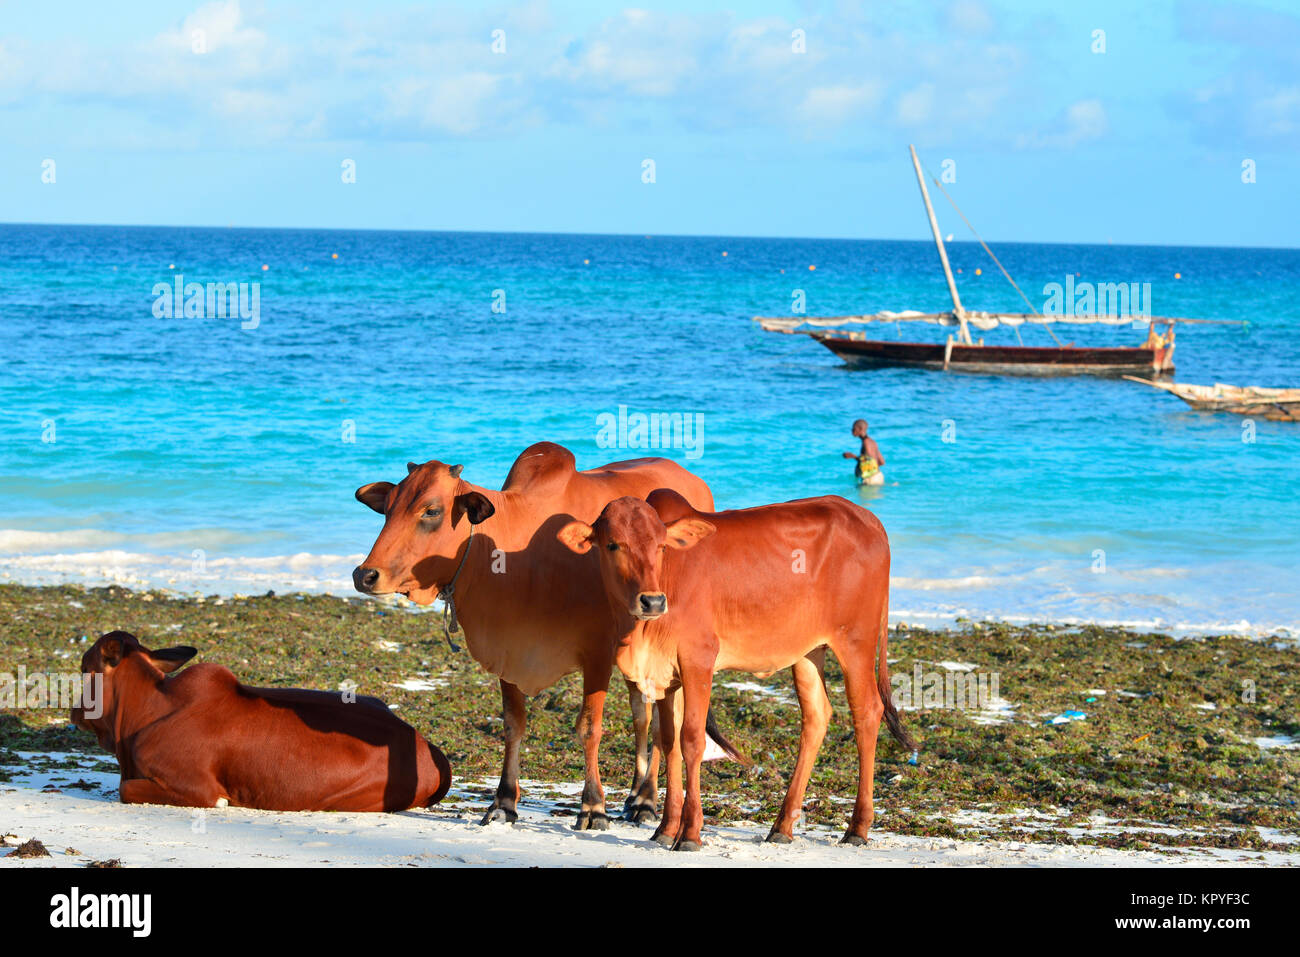 Zanzibar est un paradis de l'océan Indien que la plupart des gens peuvent se permettre de visiter pour paresseux vacances sur les plages chaudes. Les vaches sur la plage. Banque D'Images